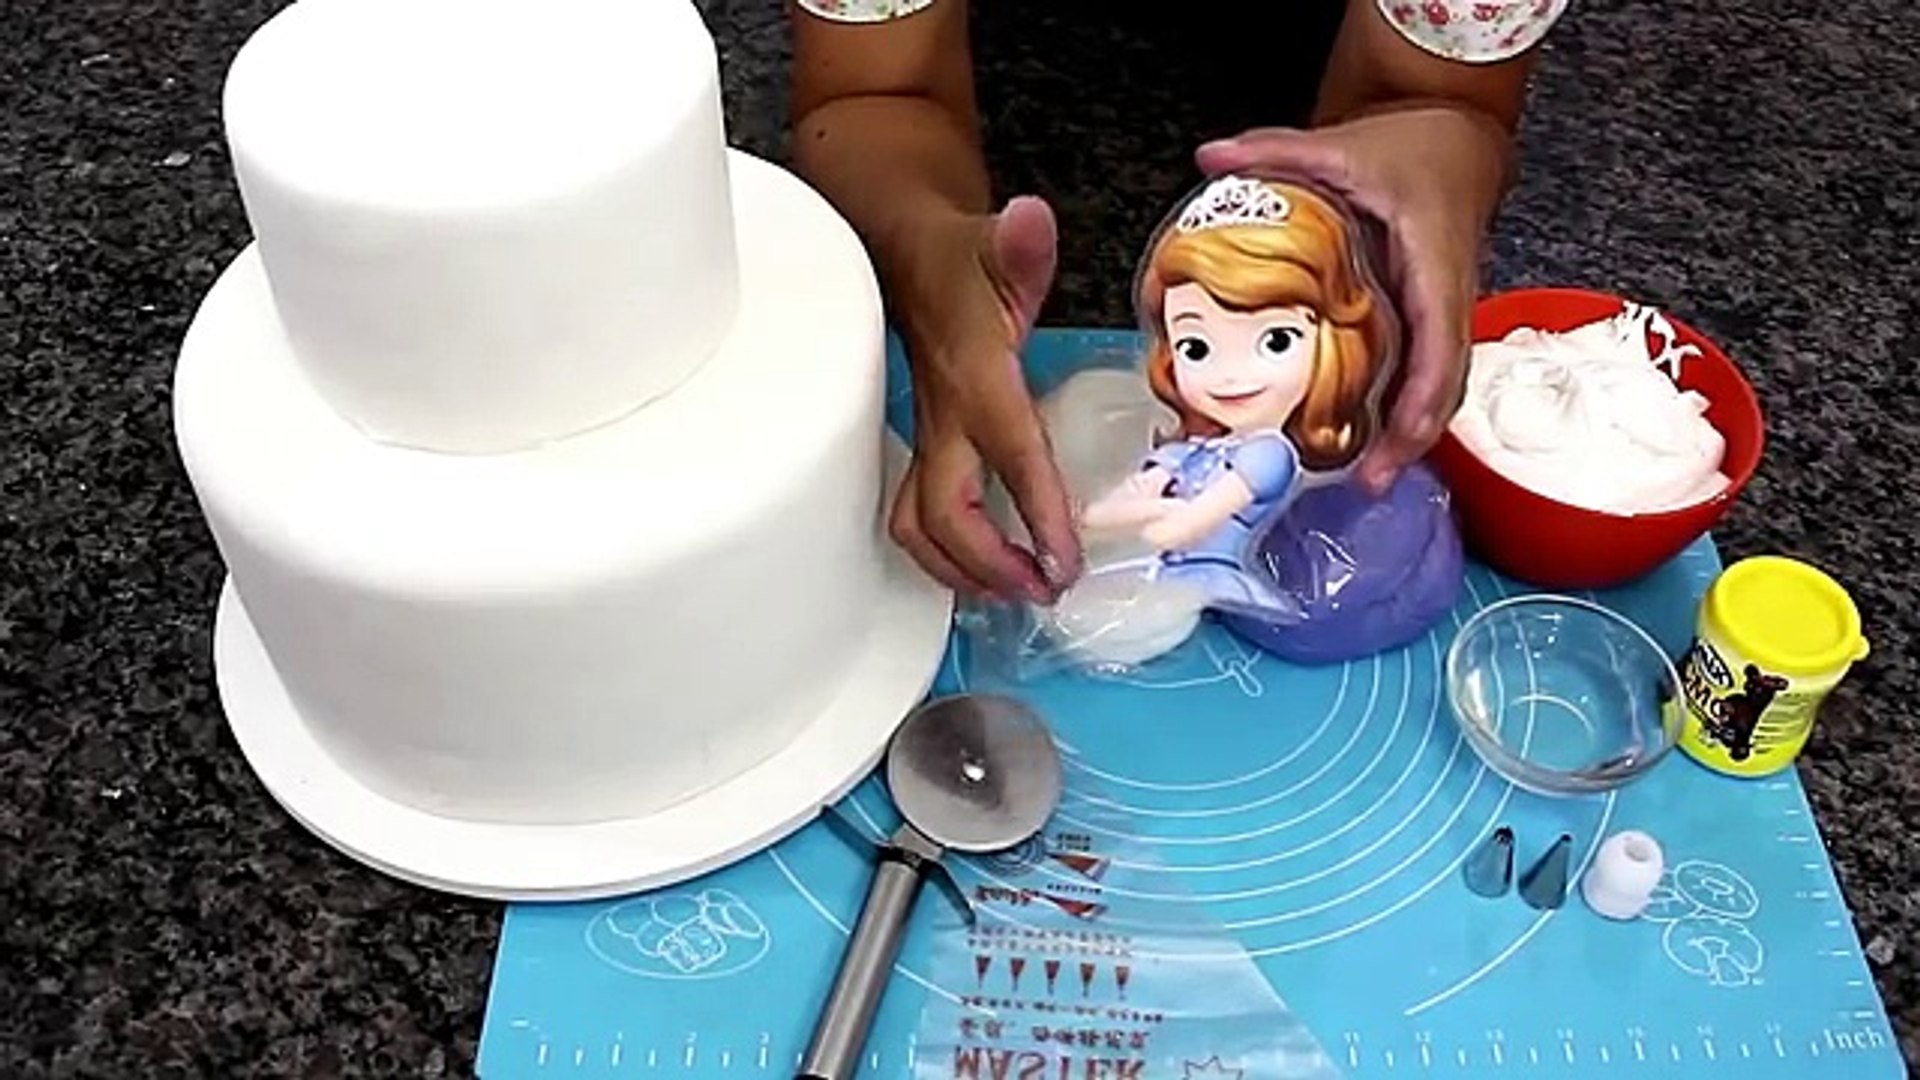 Como fazer um lindo bolo da Princesa Sofia 